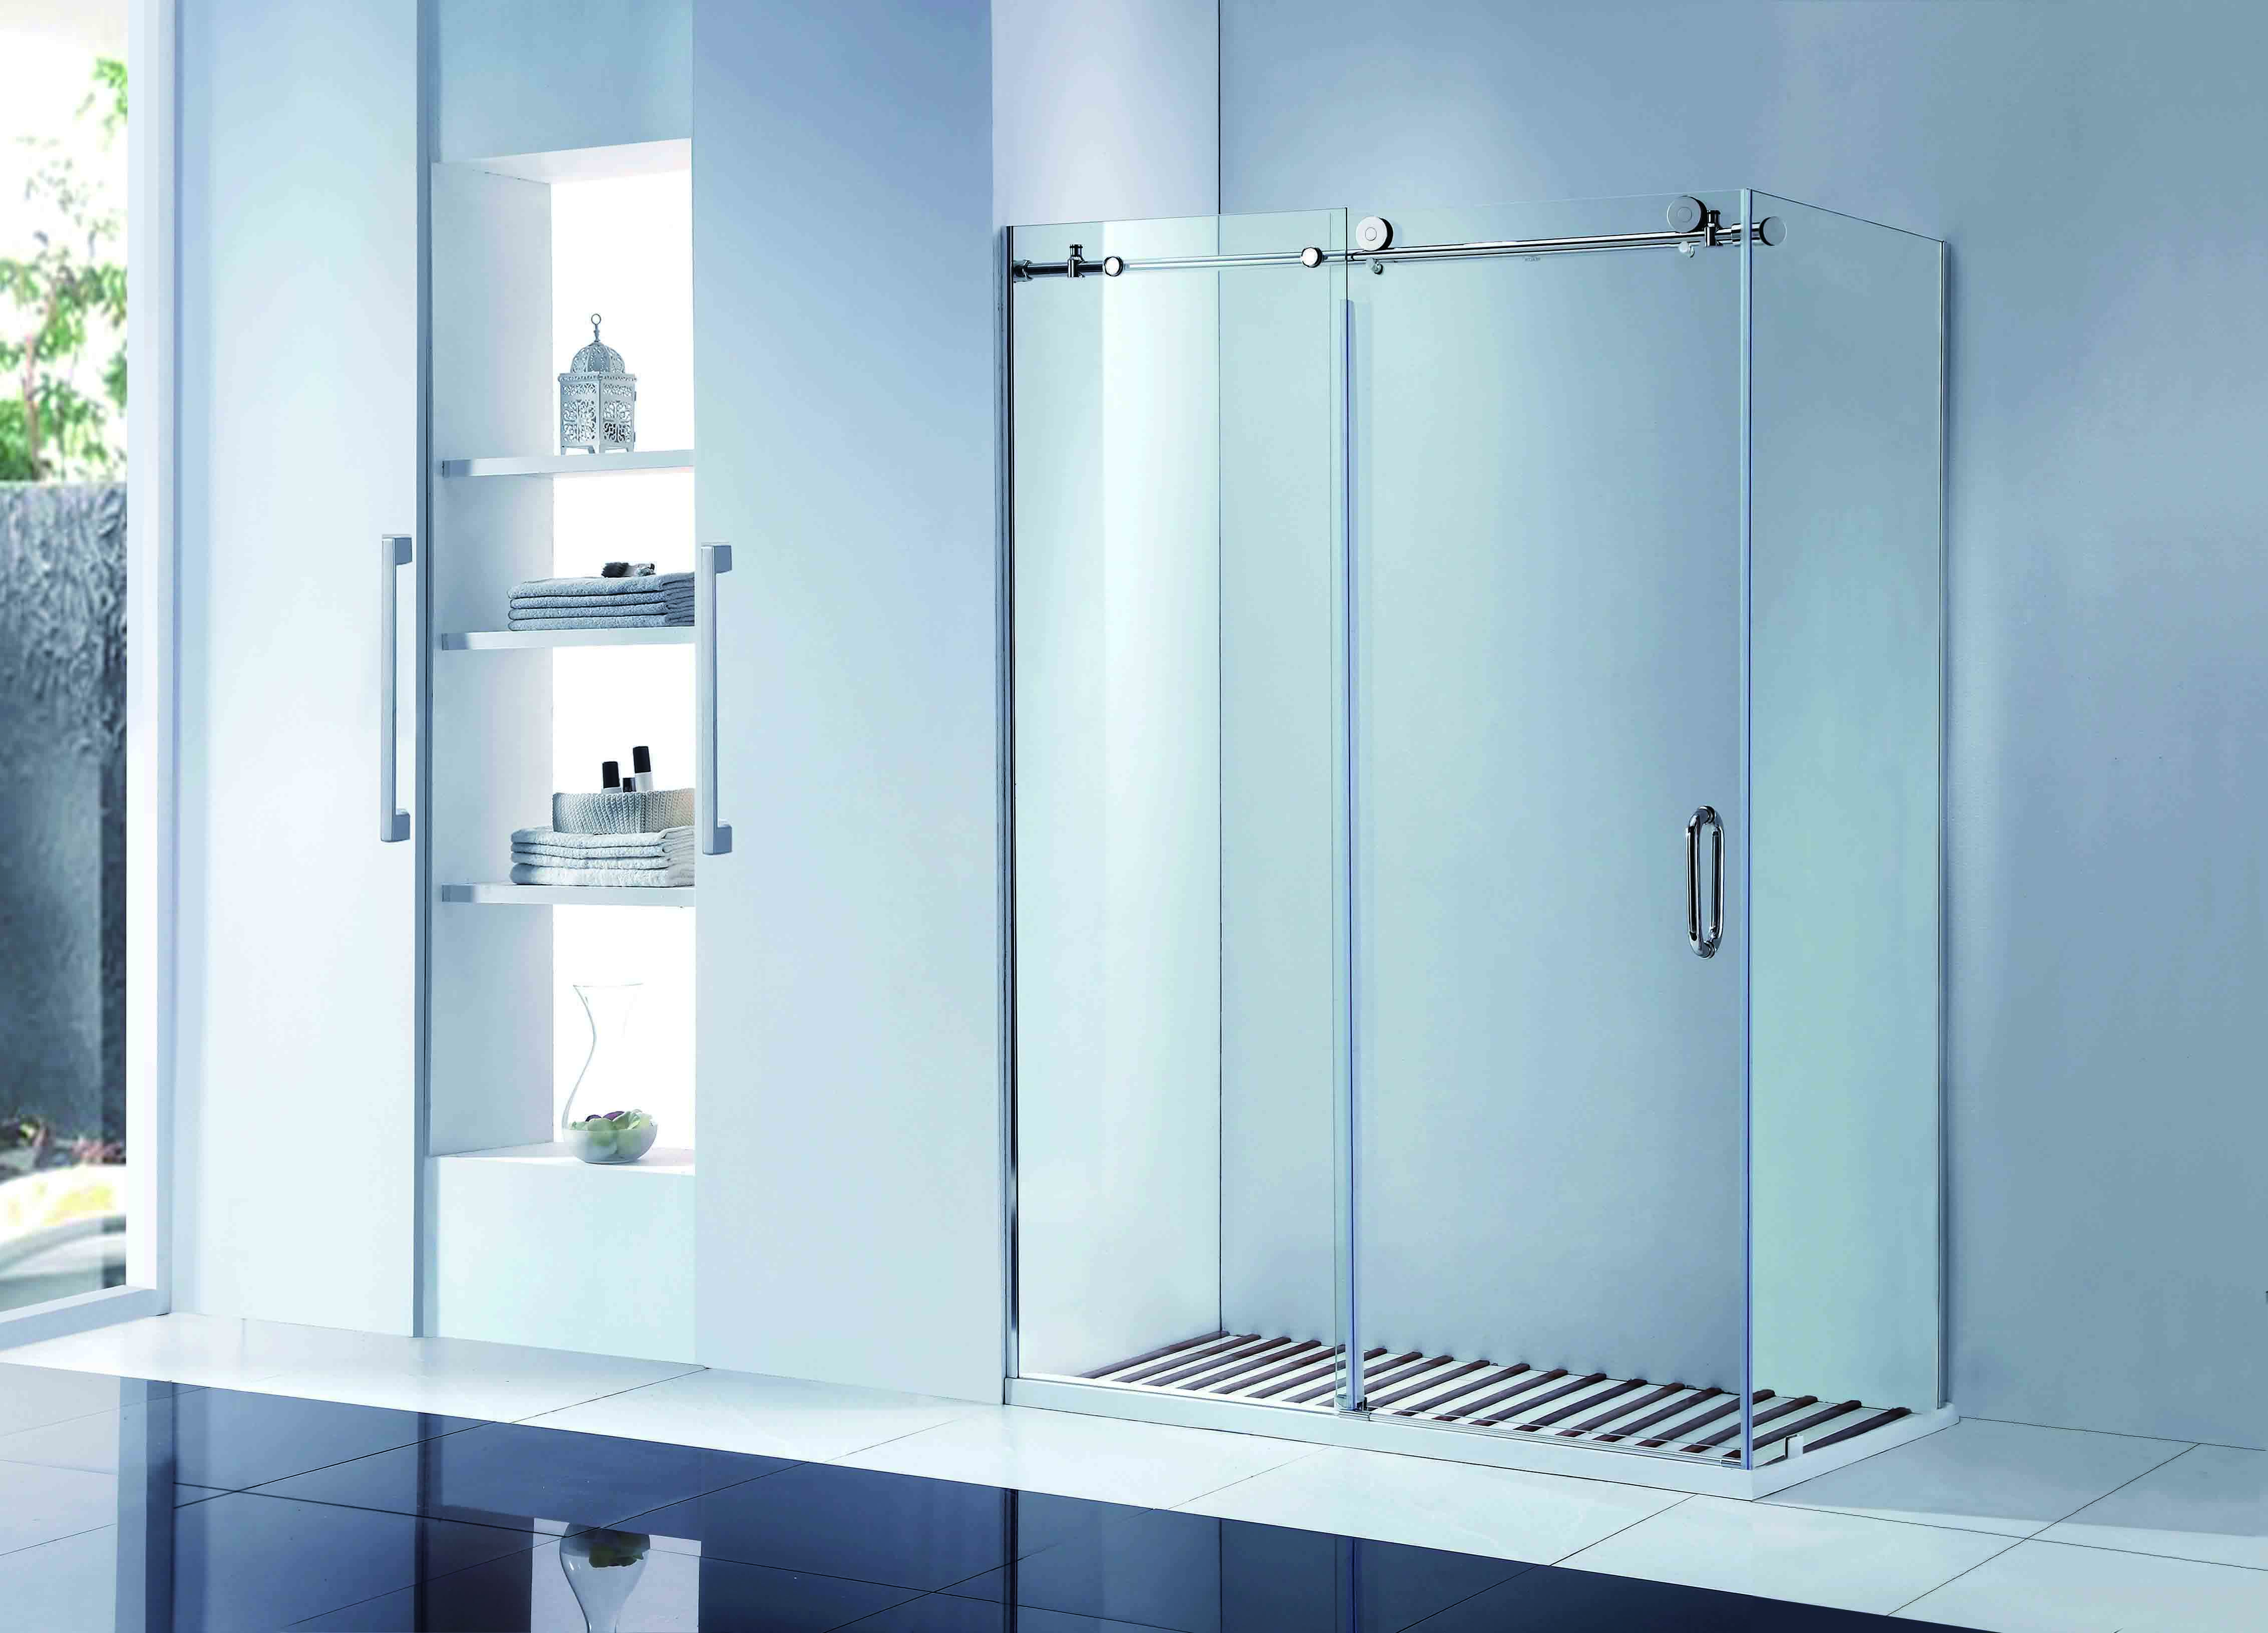 CBM bathroom sliding glass door wholesale for home-2